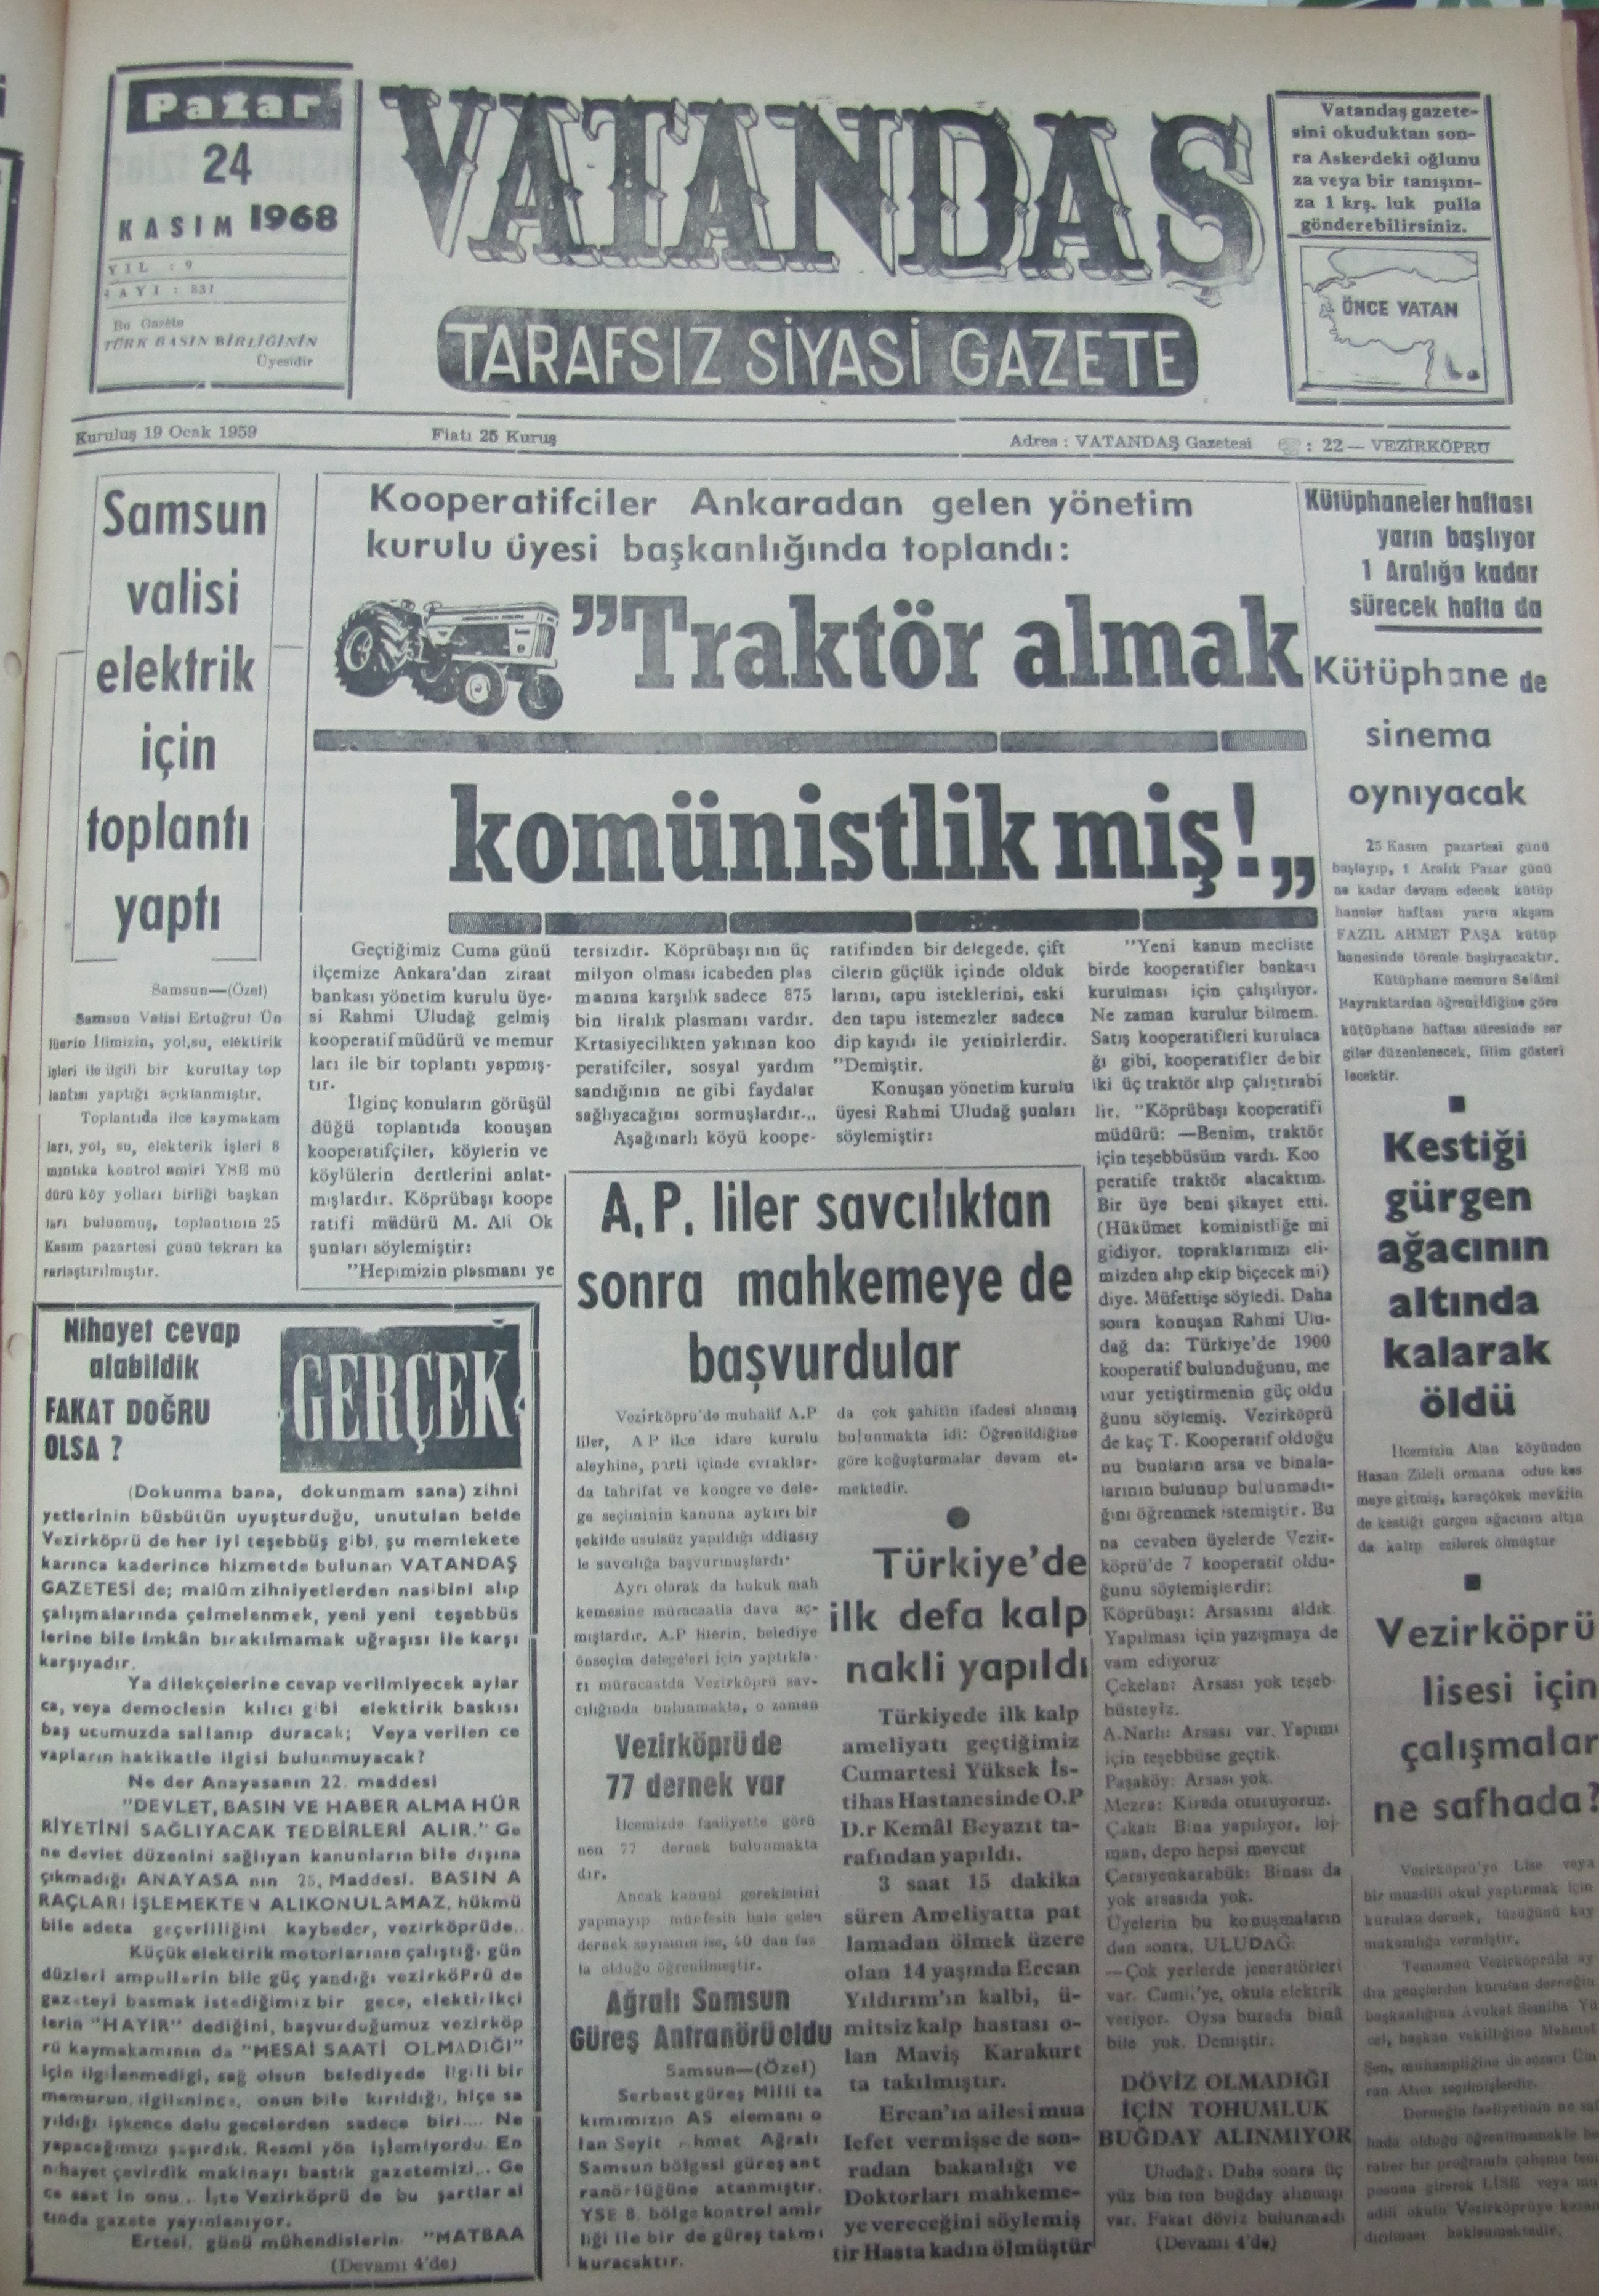 Samsun Valisi Elektrik İçin Toplantı Yaptı 24 Kasım 1968 Pazar